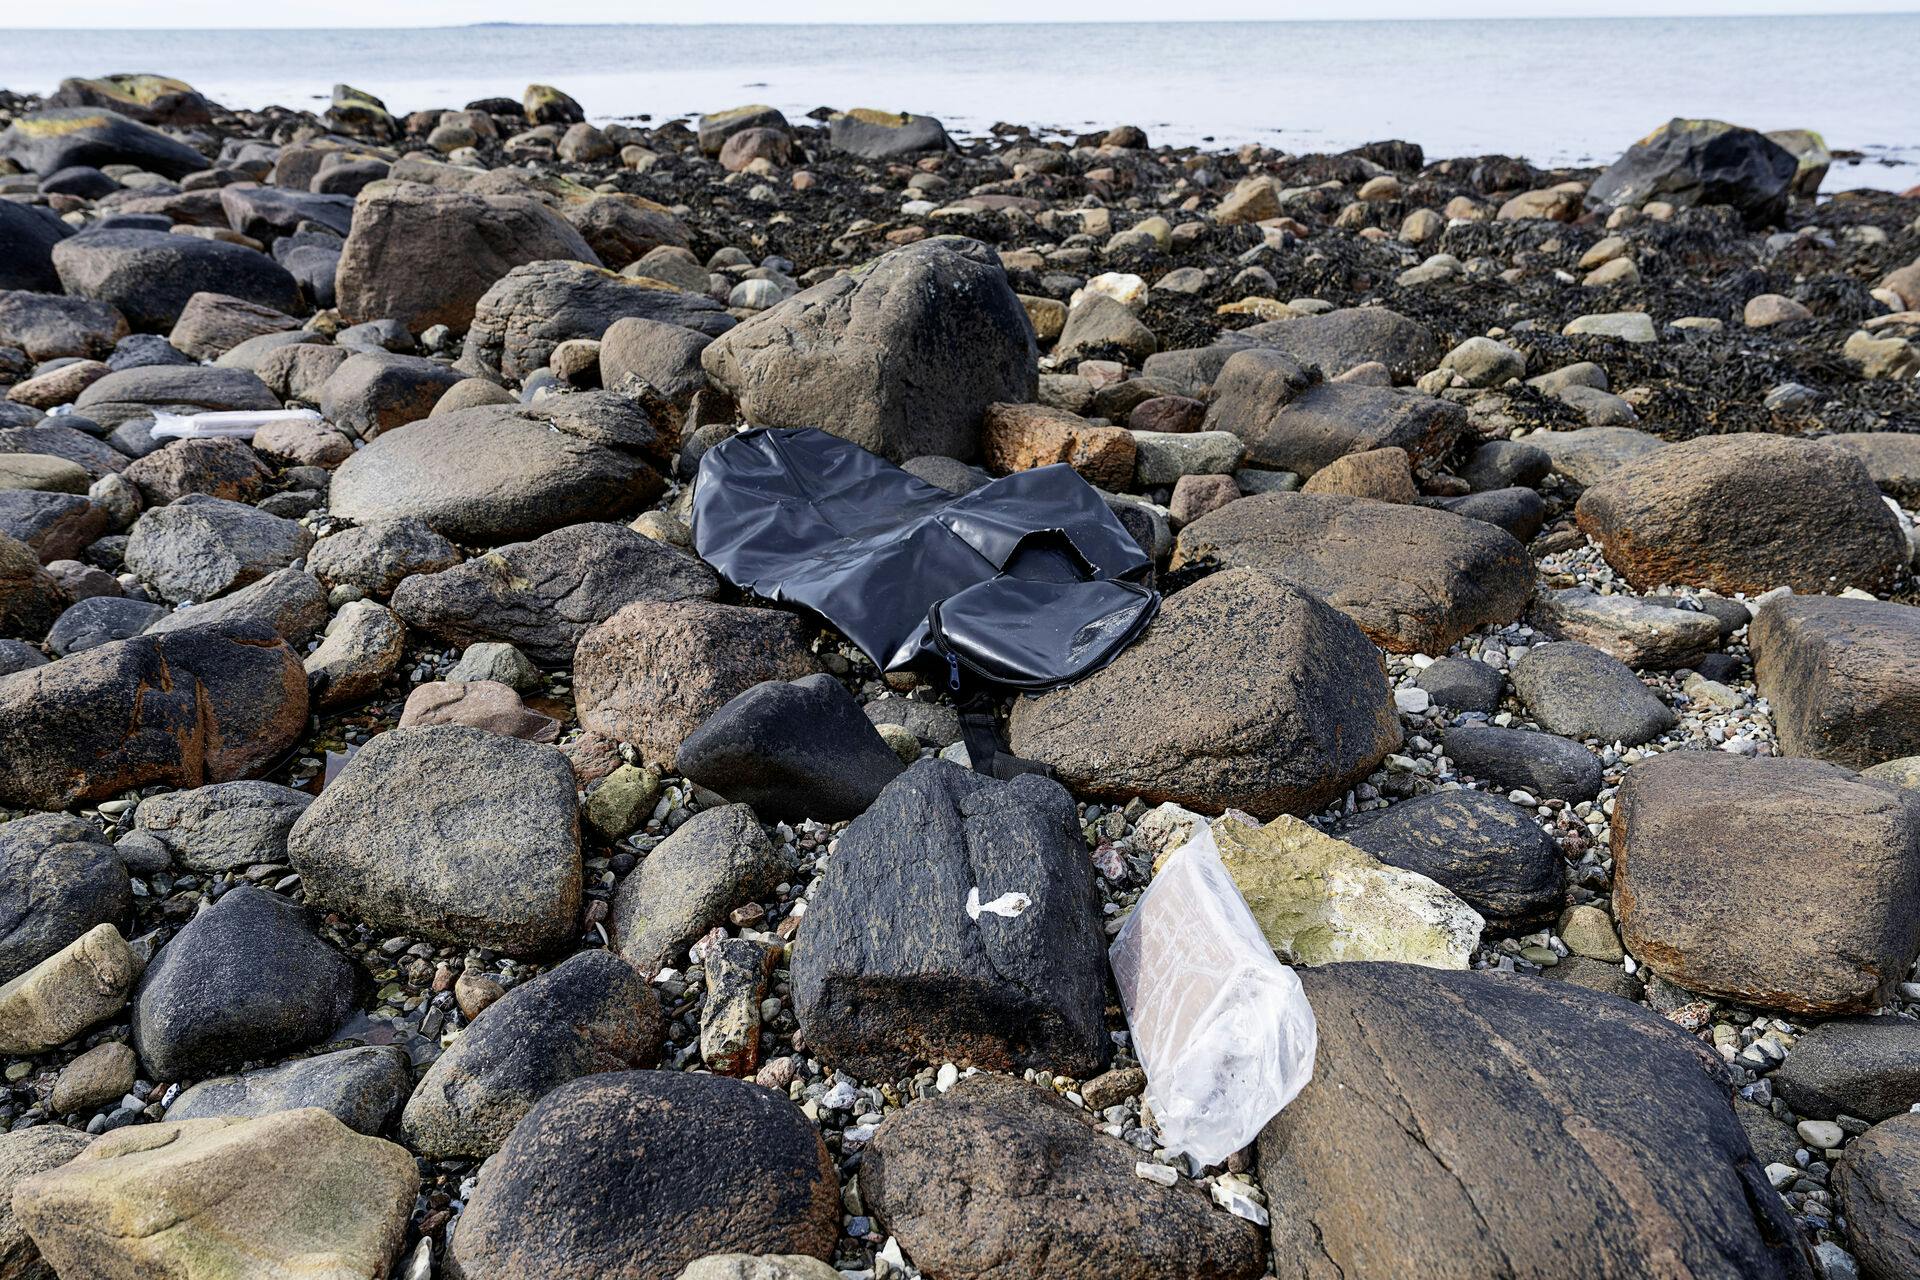 Det har været et noget så sjældent syn ved flere kyster i Nordvestsjælland. Et hav af pakker med narko er skyllet i land. 